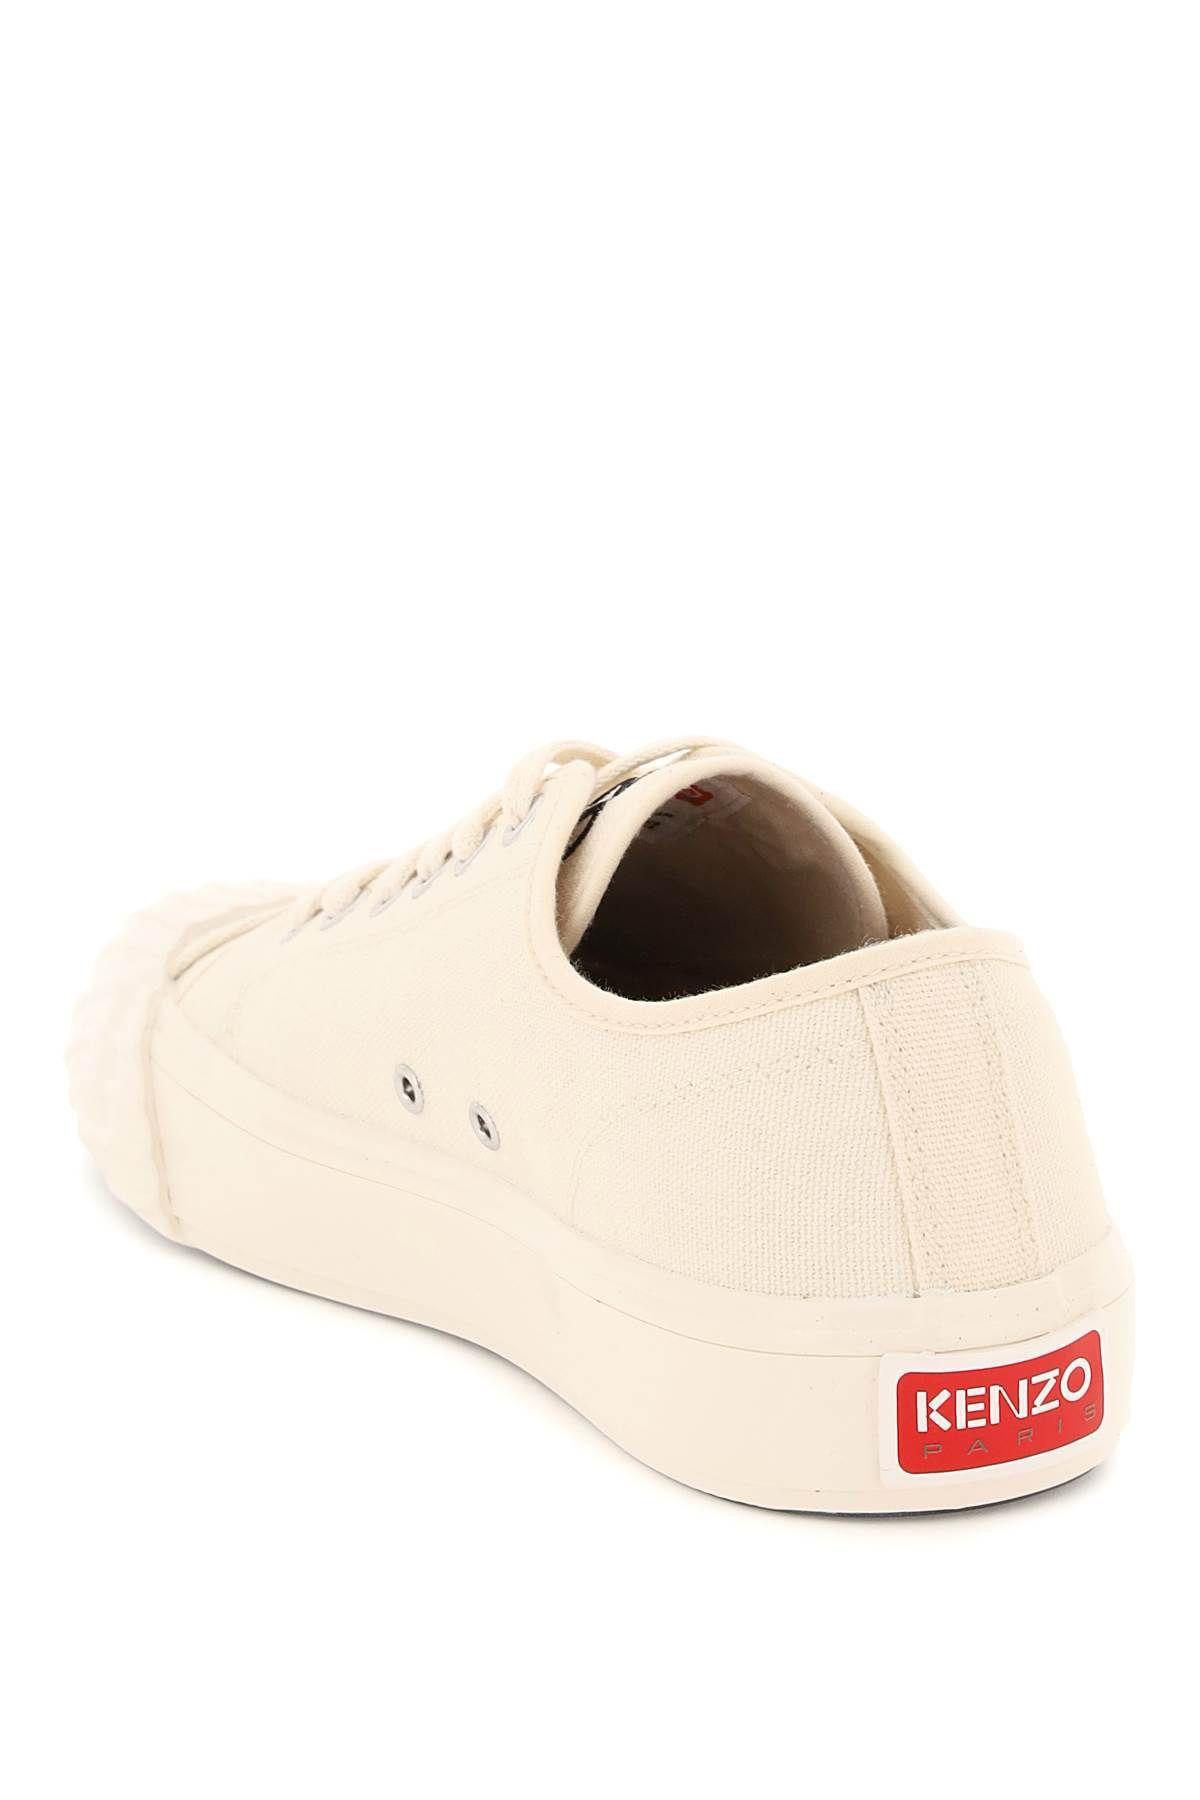 KENZO 'school' Low-top Sneakers in Pink for Men | Lyst